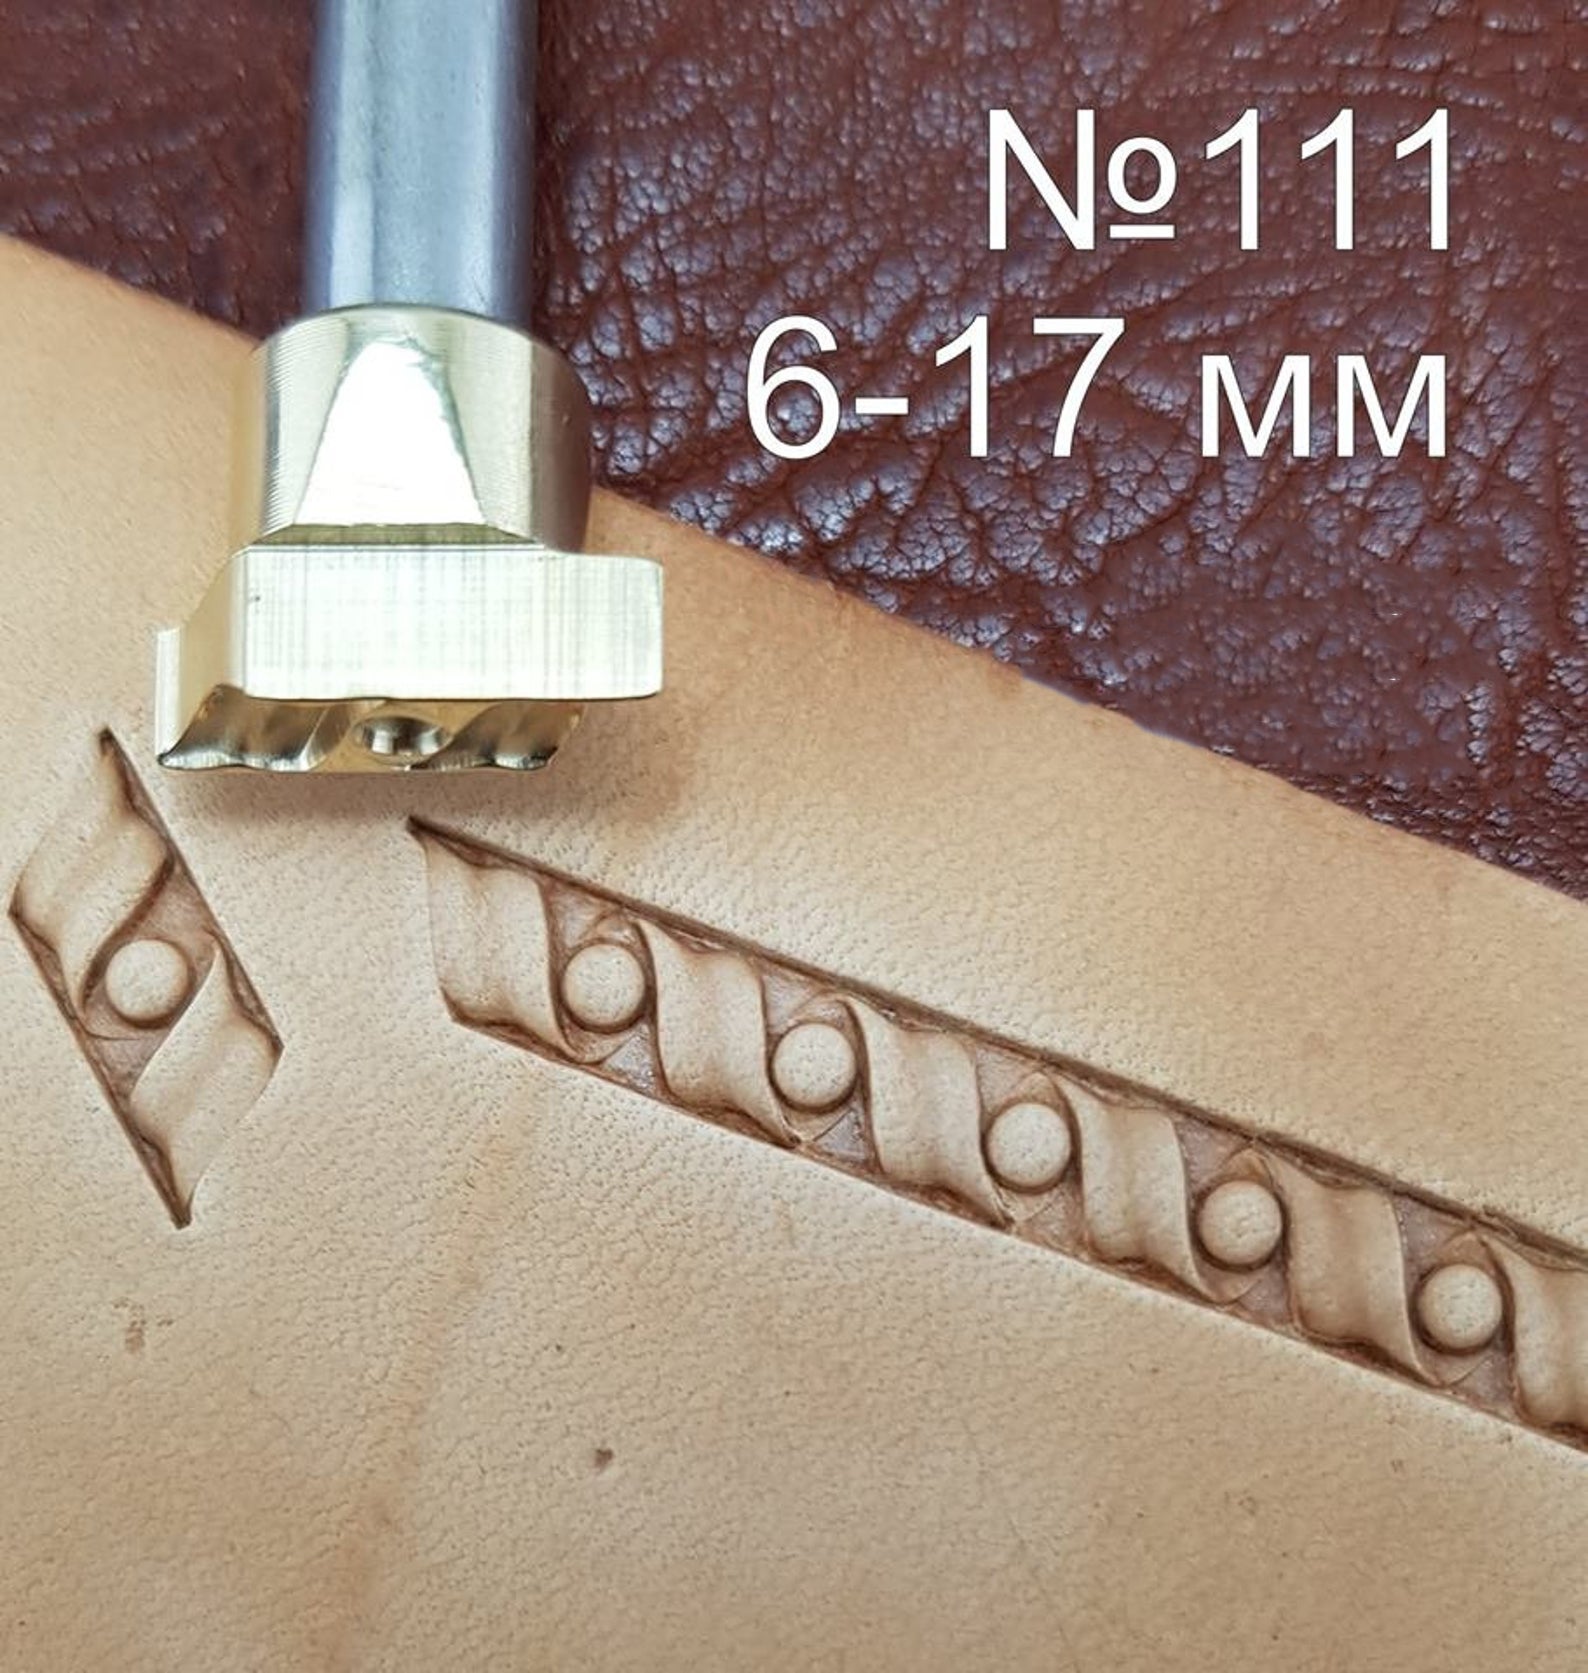 Leather stamp tool #111 - SpasGoranov